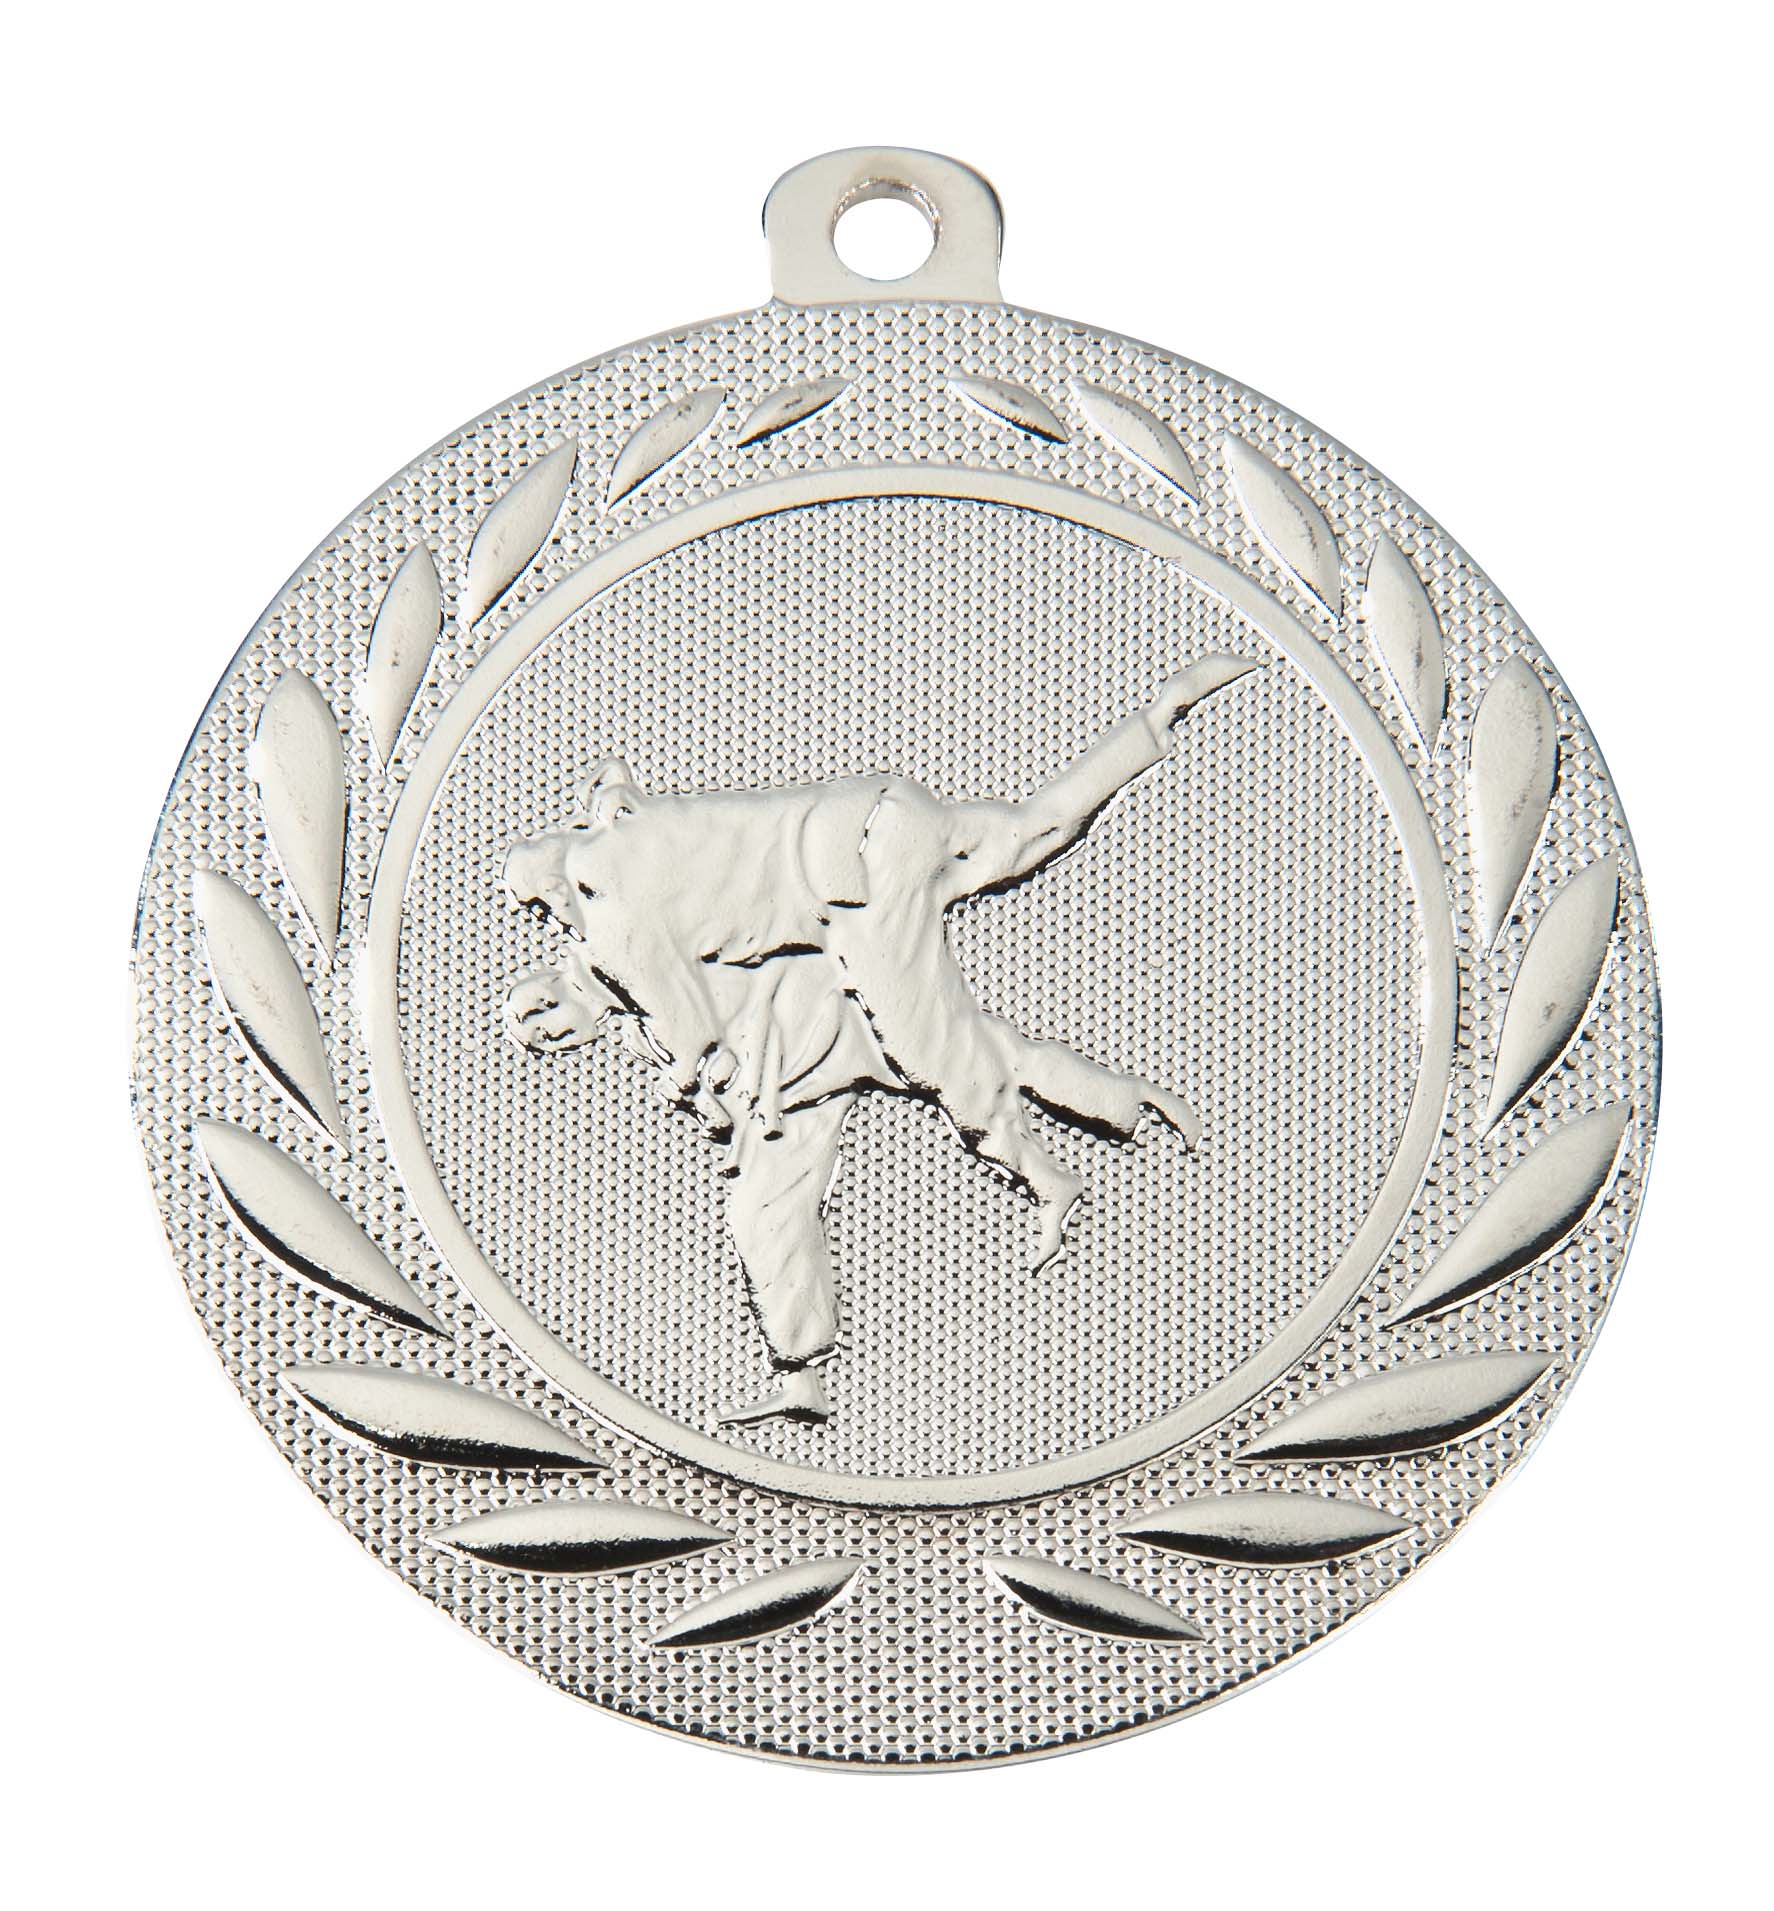 Judo-Medaille DI5000.I inkl. Band und Beschriftung Silber Fertig montiert gegen Aufpreis